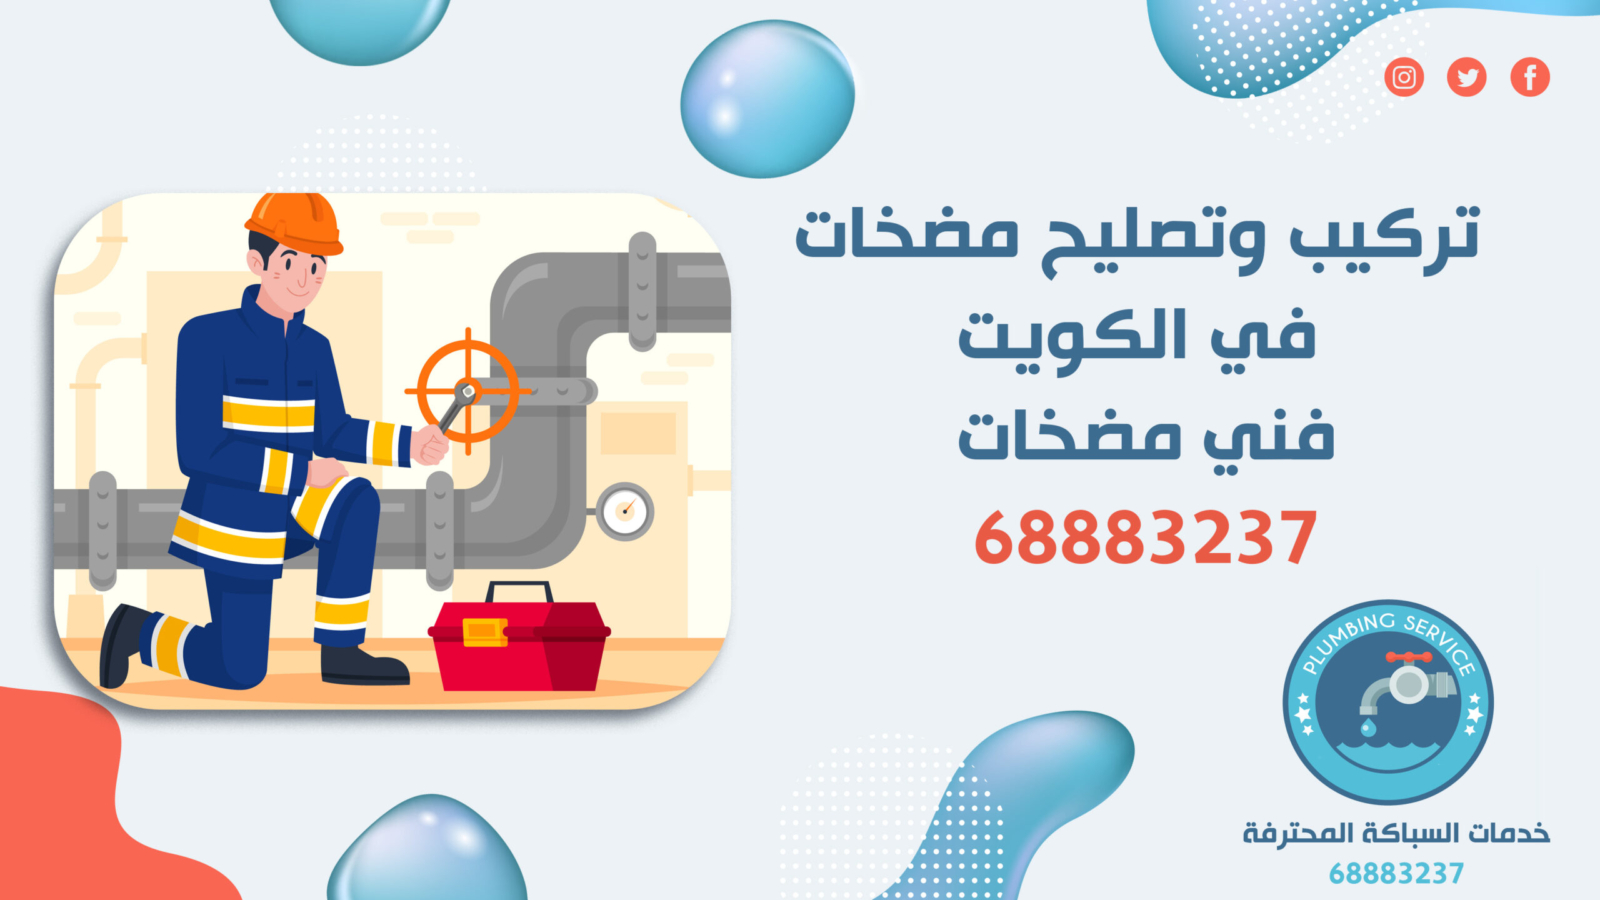 تركيب وتصليح مضخات في الكويت | 68883237 | فني مضخات